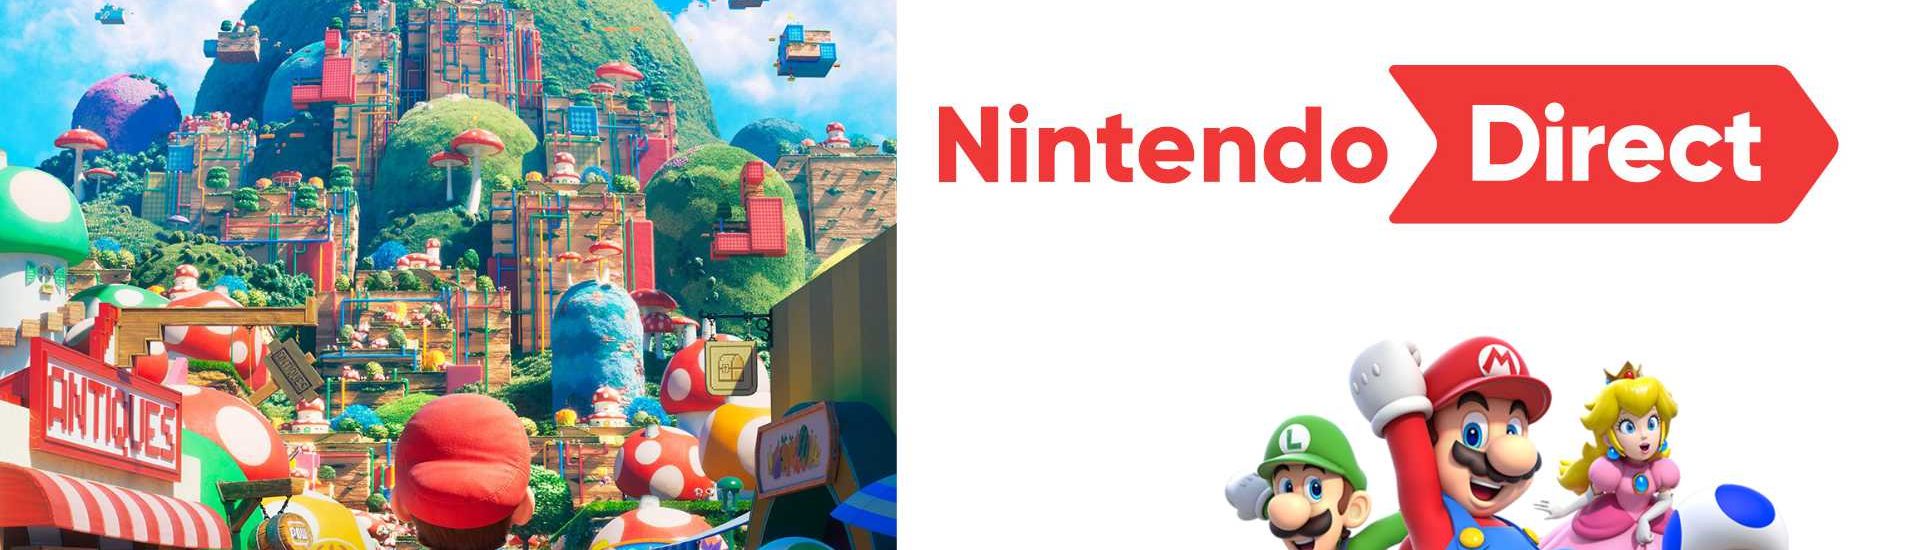 Nintendo Direct: Heute sehen wir den zweiten Trailer zum Mario-Film